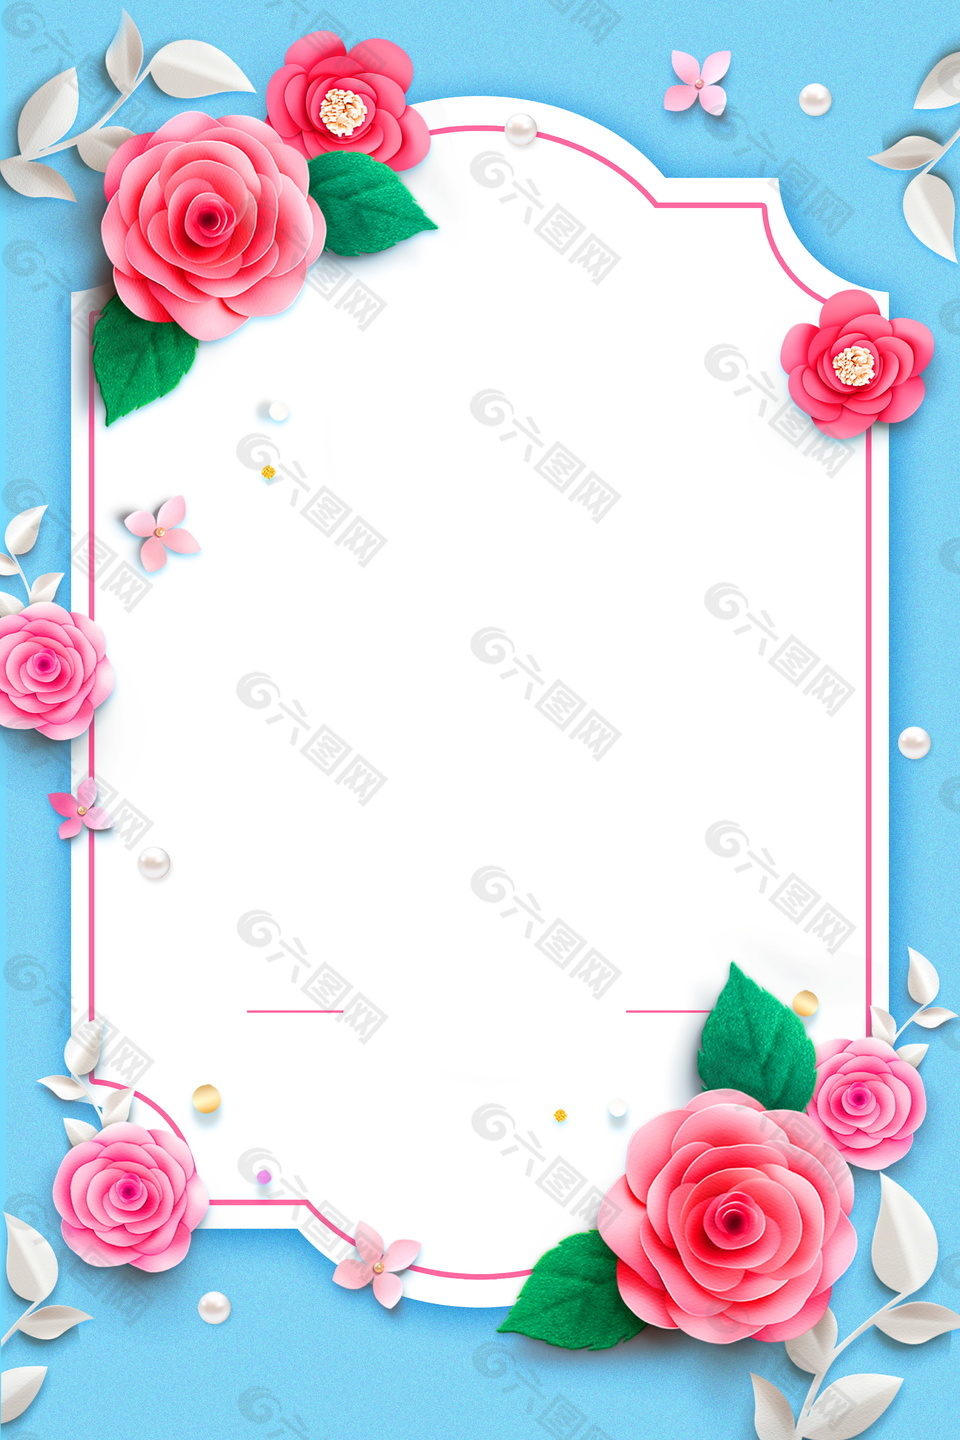 立体粉色花朵板块夏季促销广告背景素材